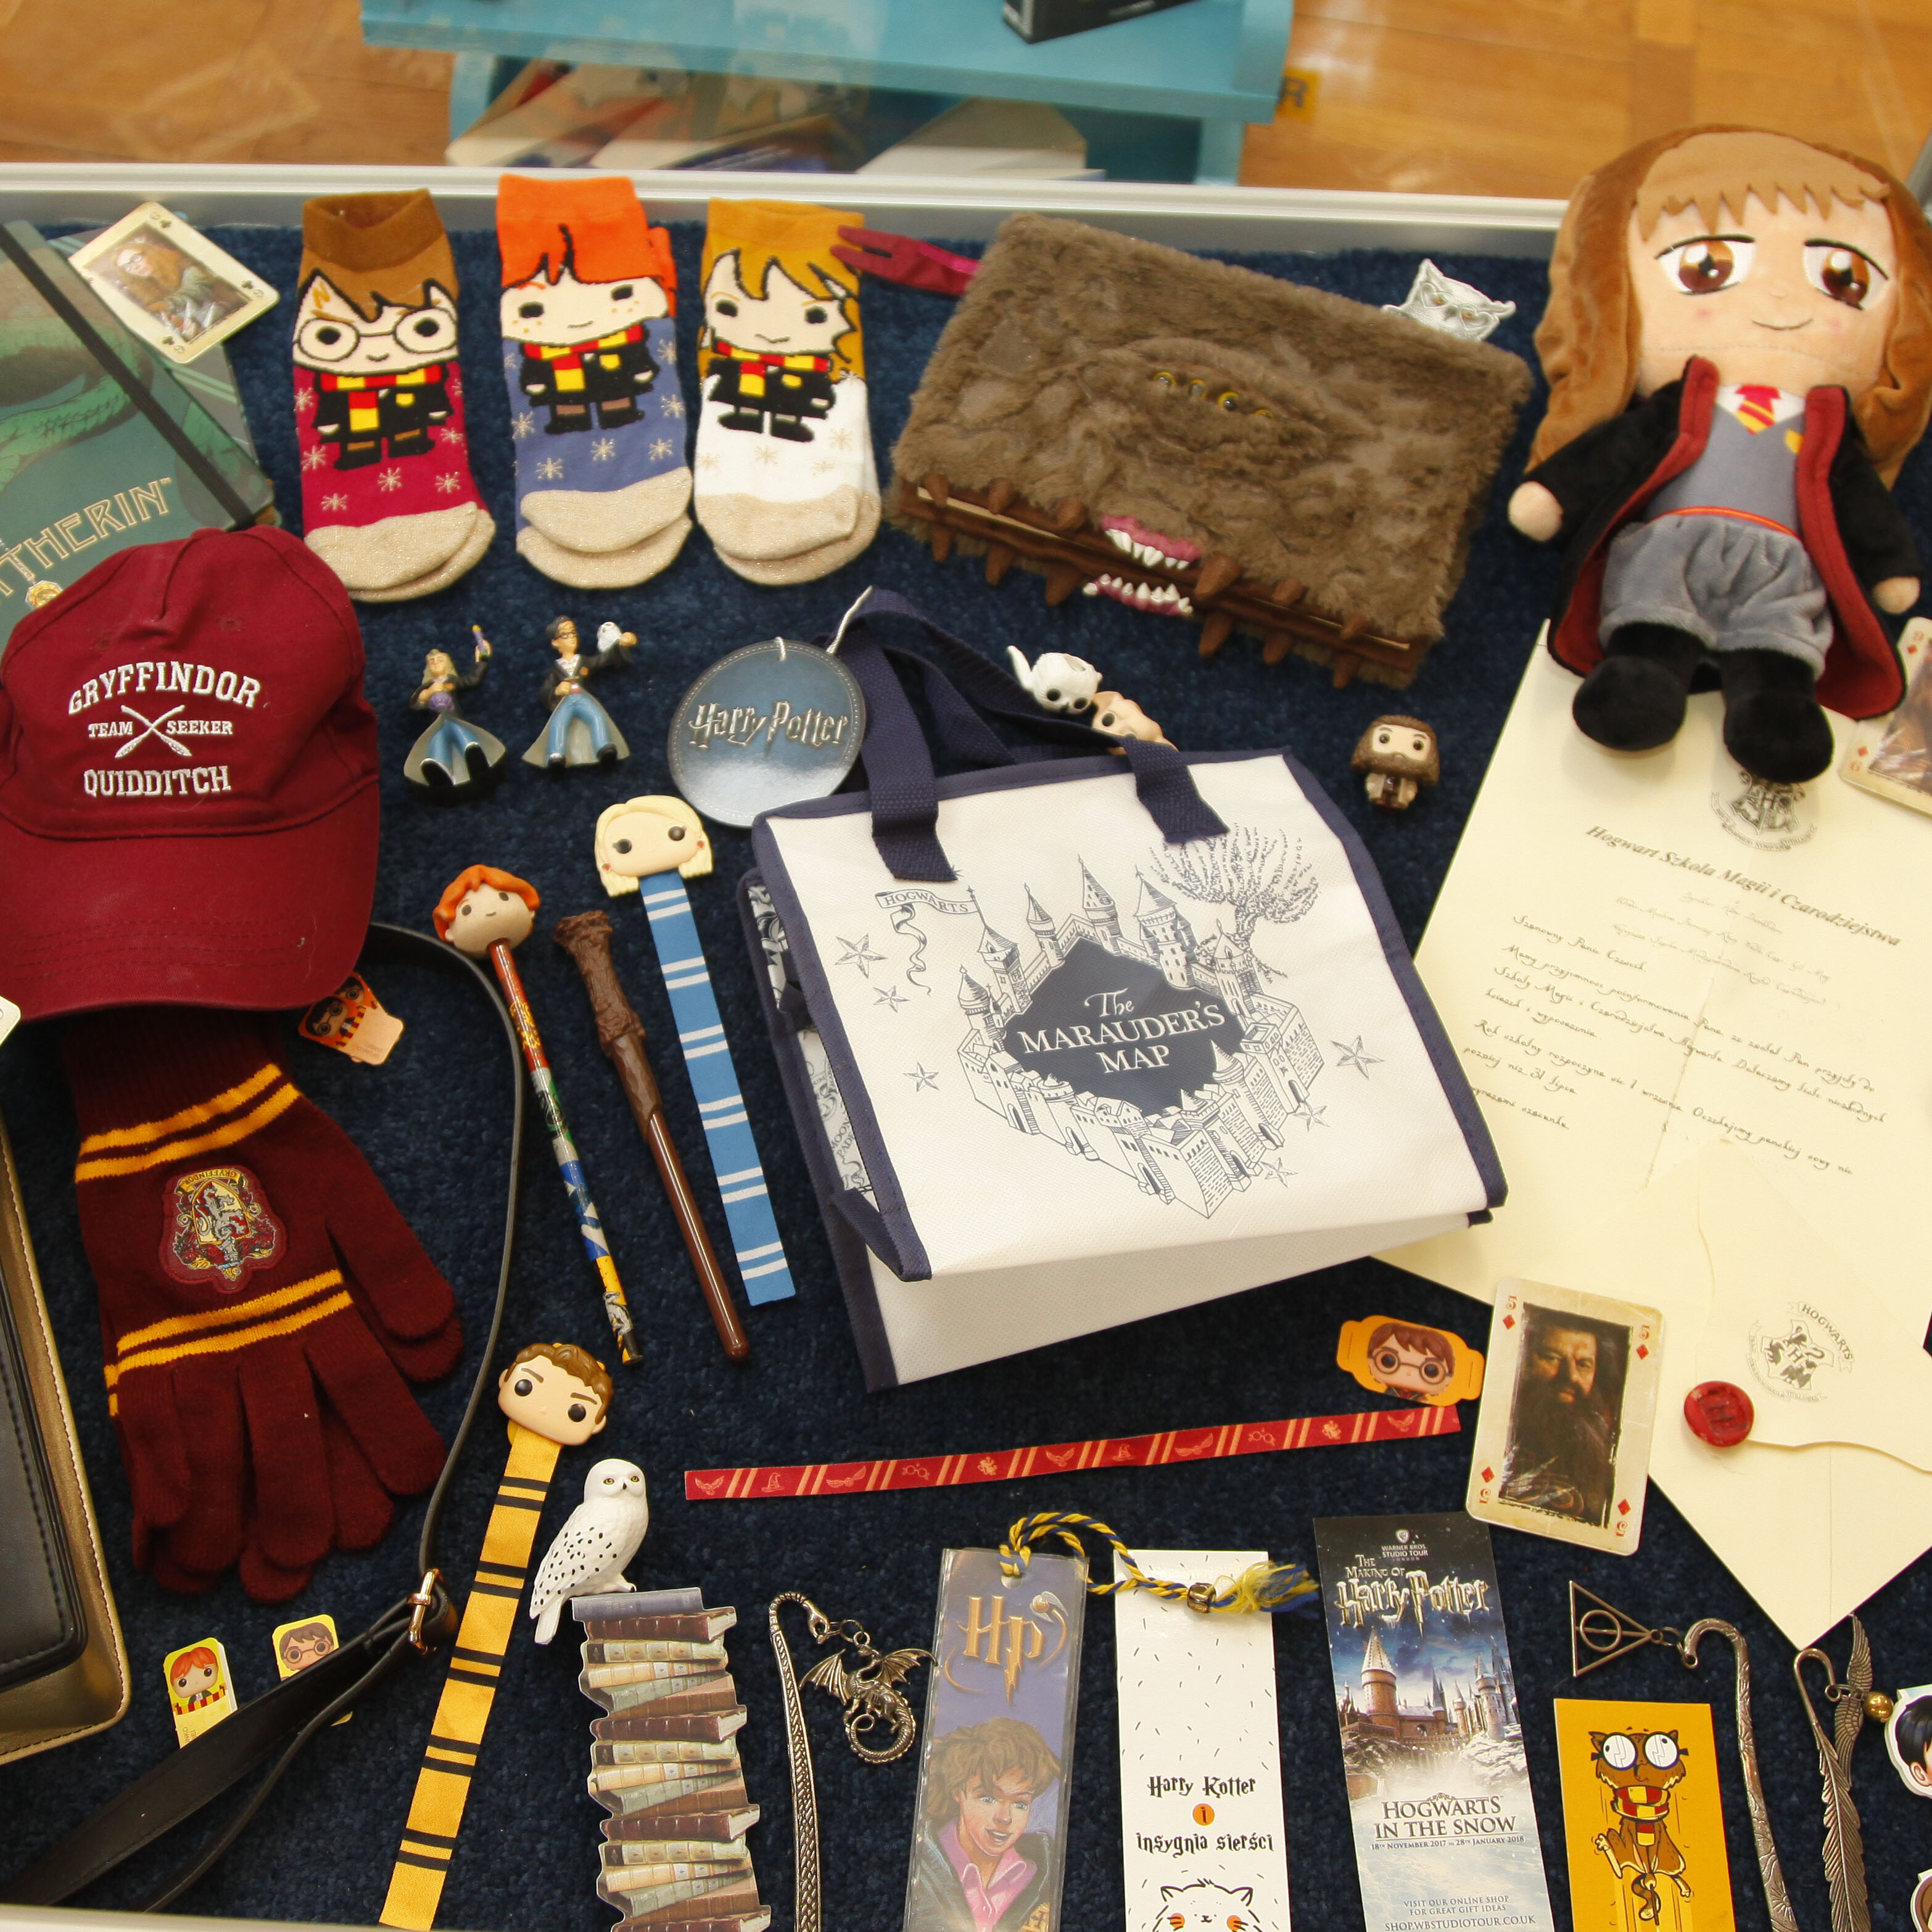 zdjęcie przedstawia przedmioty związane z Harrym Potterem: długopisy, skarpetki, czapka itd.